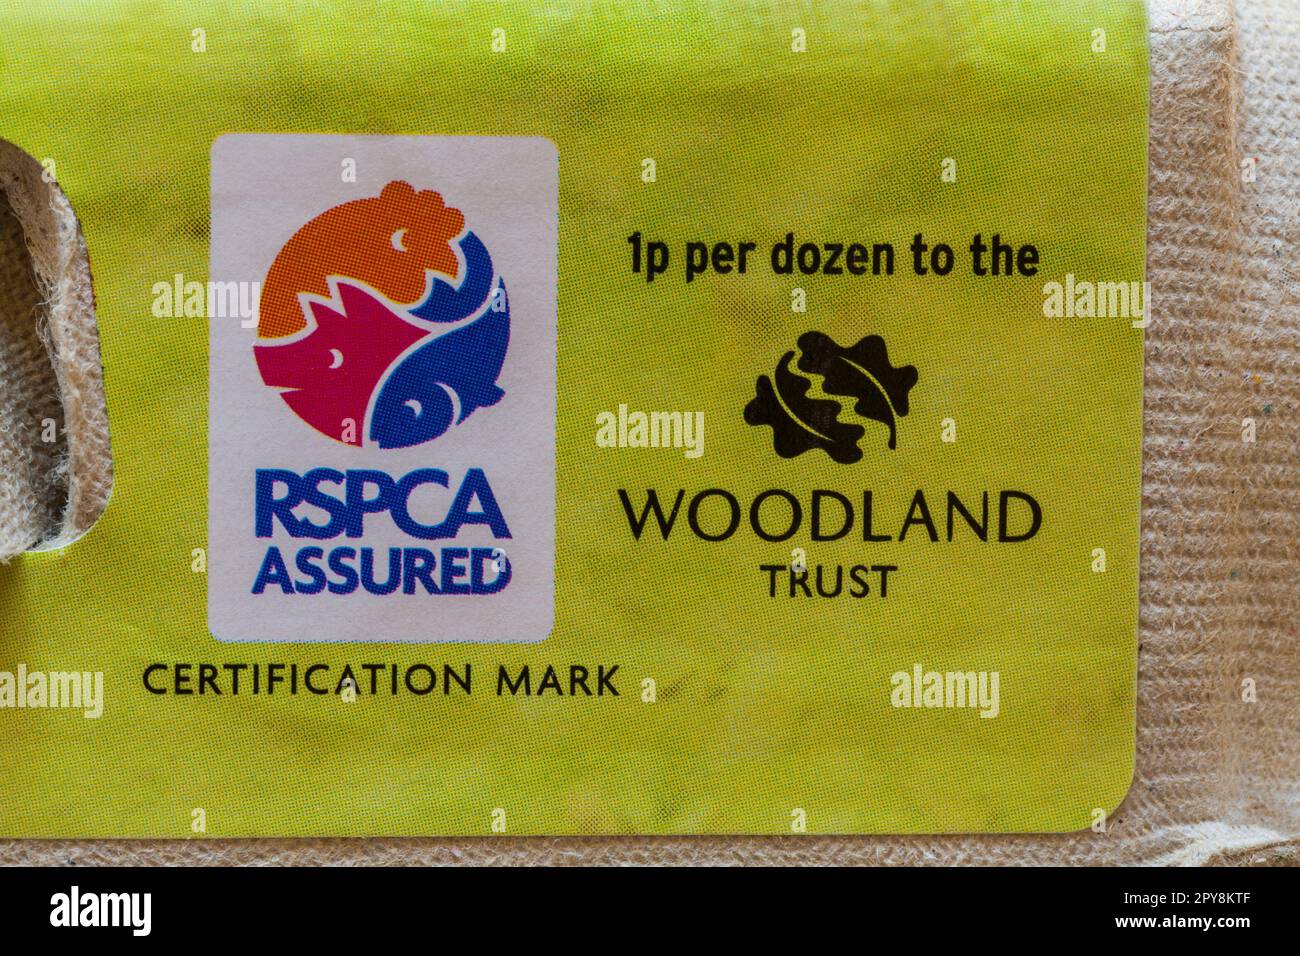 RSPCA-zertifiziertes Siegel und 1p $ pro Dutzend an The Woodland Trust - Details auf Karton mit 6 großen britischen Freilandeiern von Sainsbury's Stockfoto